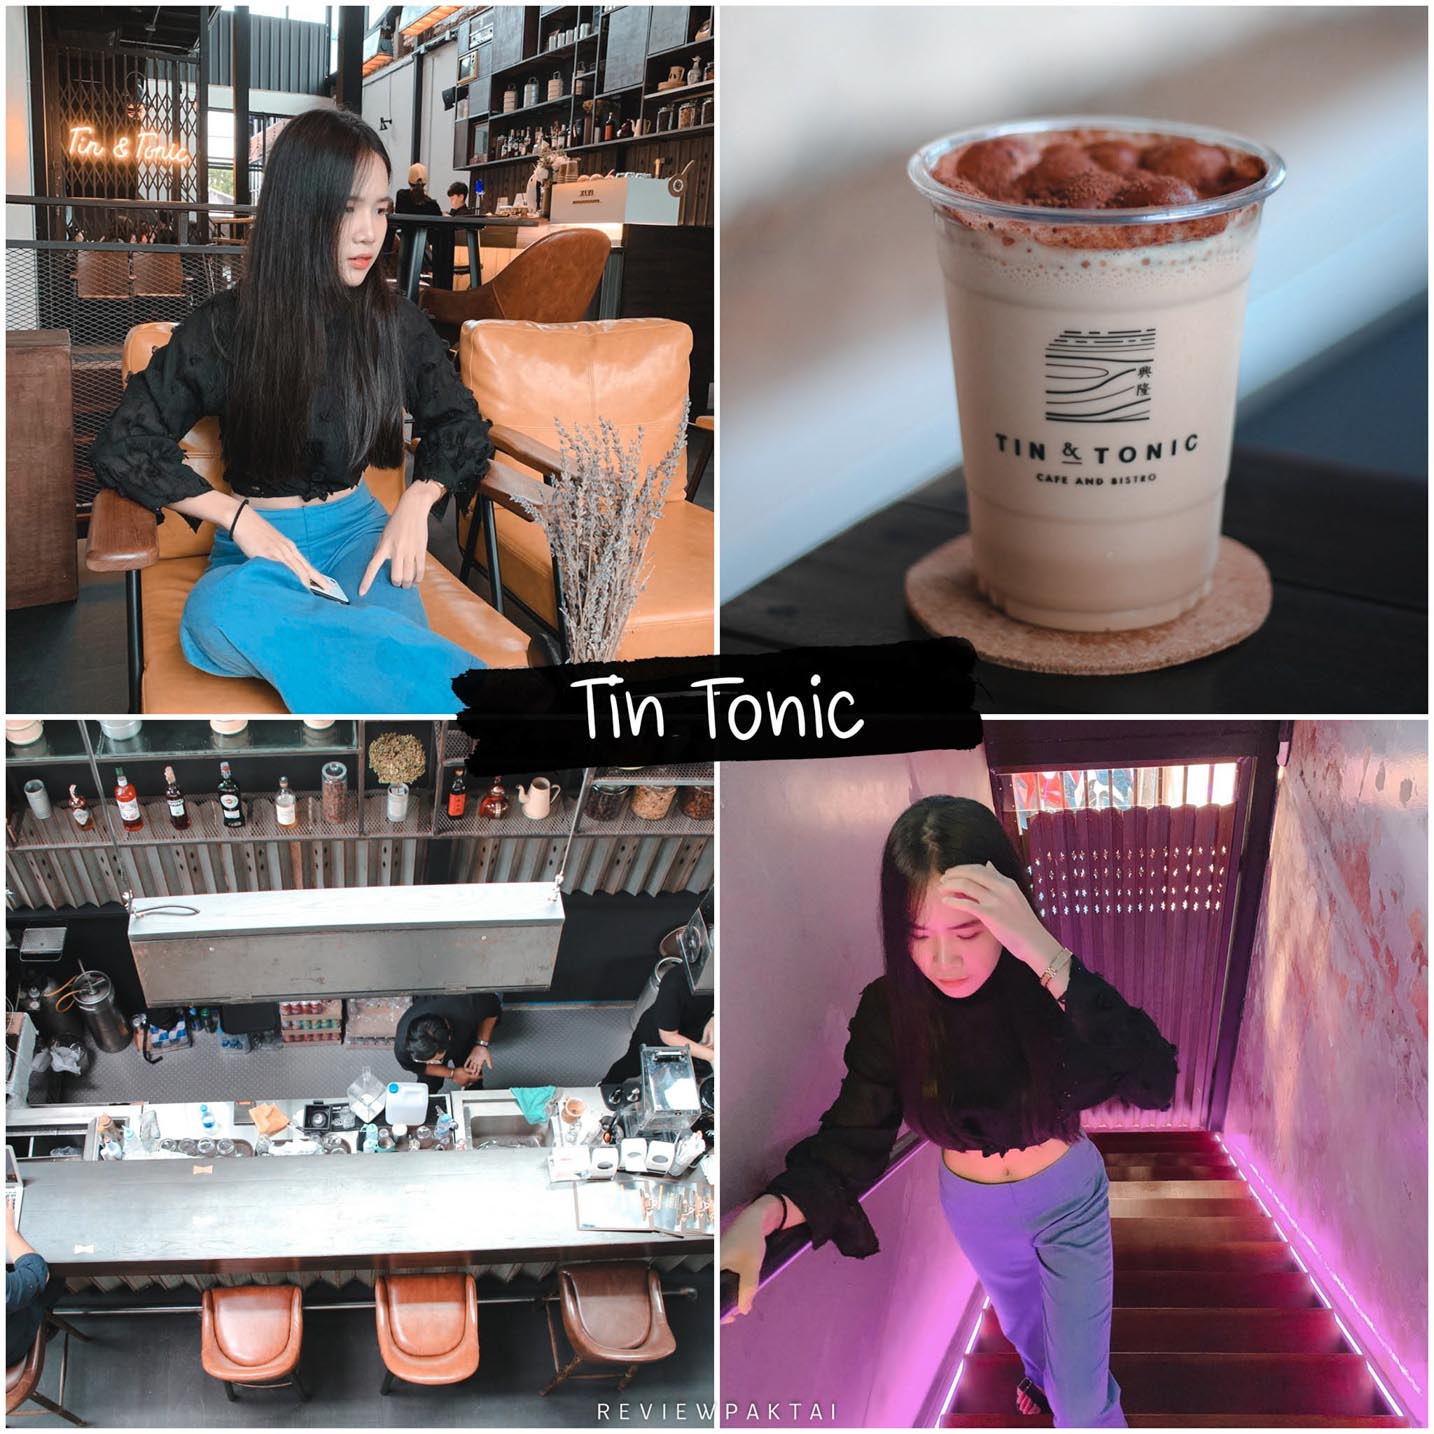 Tin & Tonic Cafe Phuket гарантированно не разочаруется. Делайте красивые, шикарные, уникальные фотографии. Могу ли я не пойти на регистрацию?